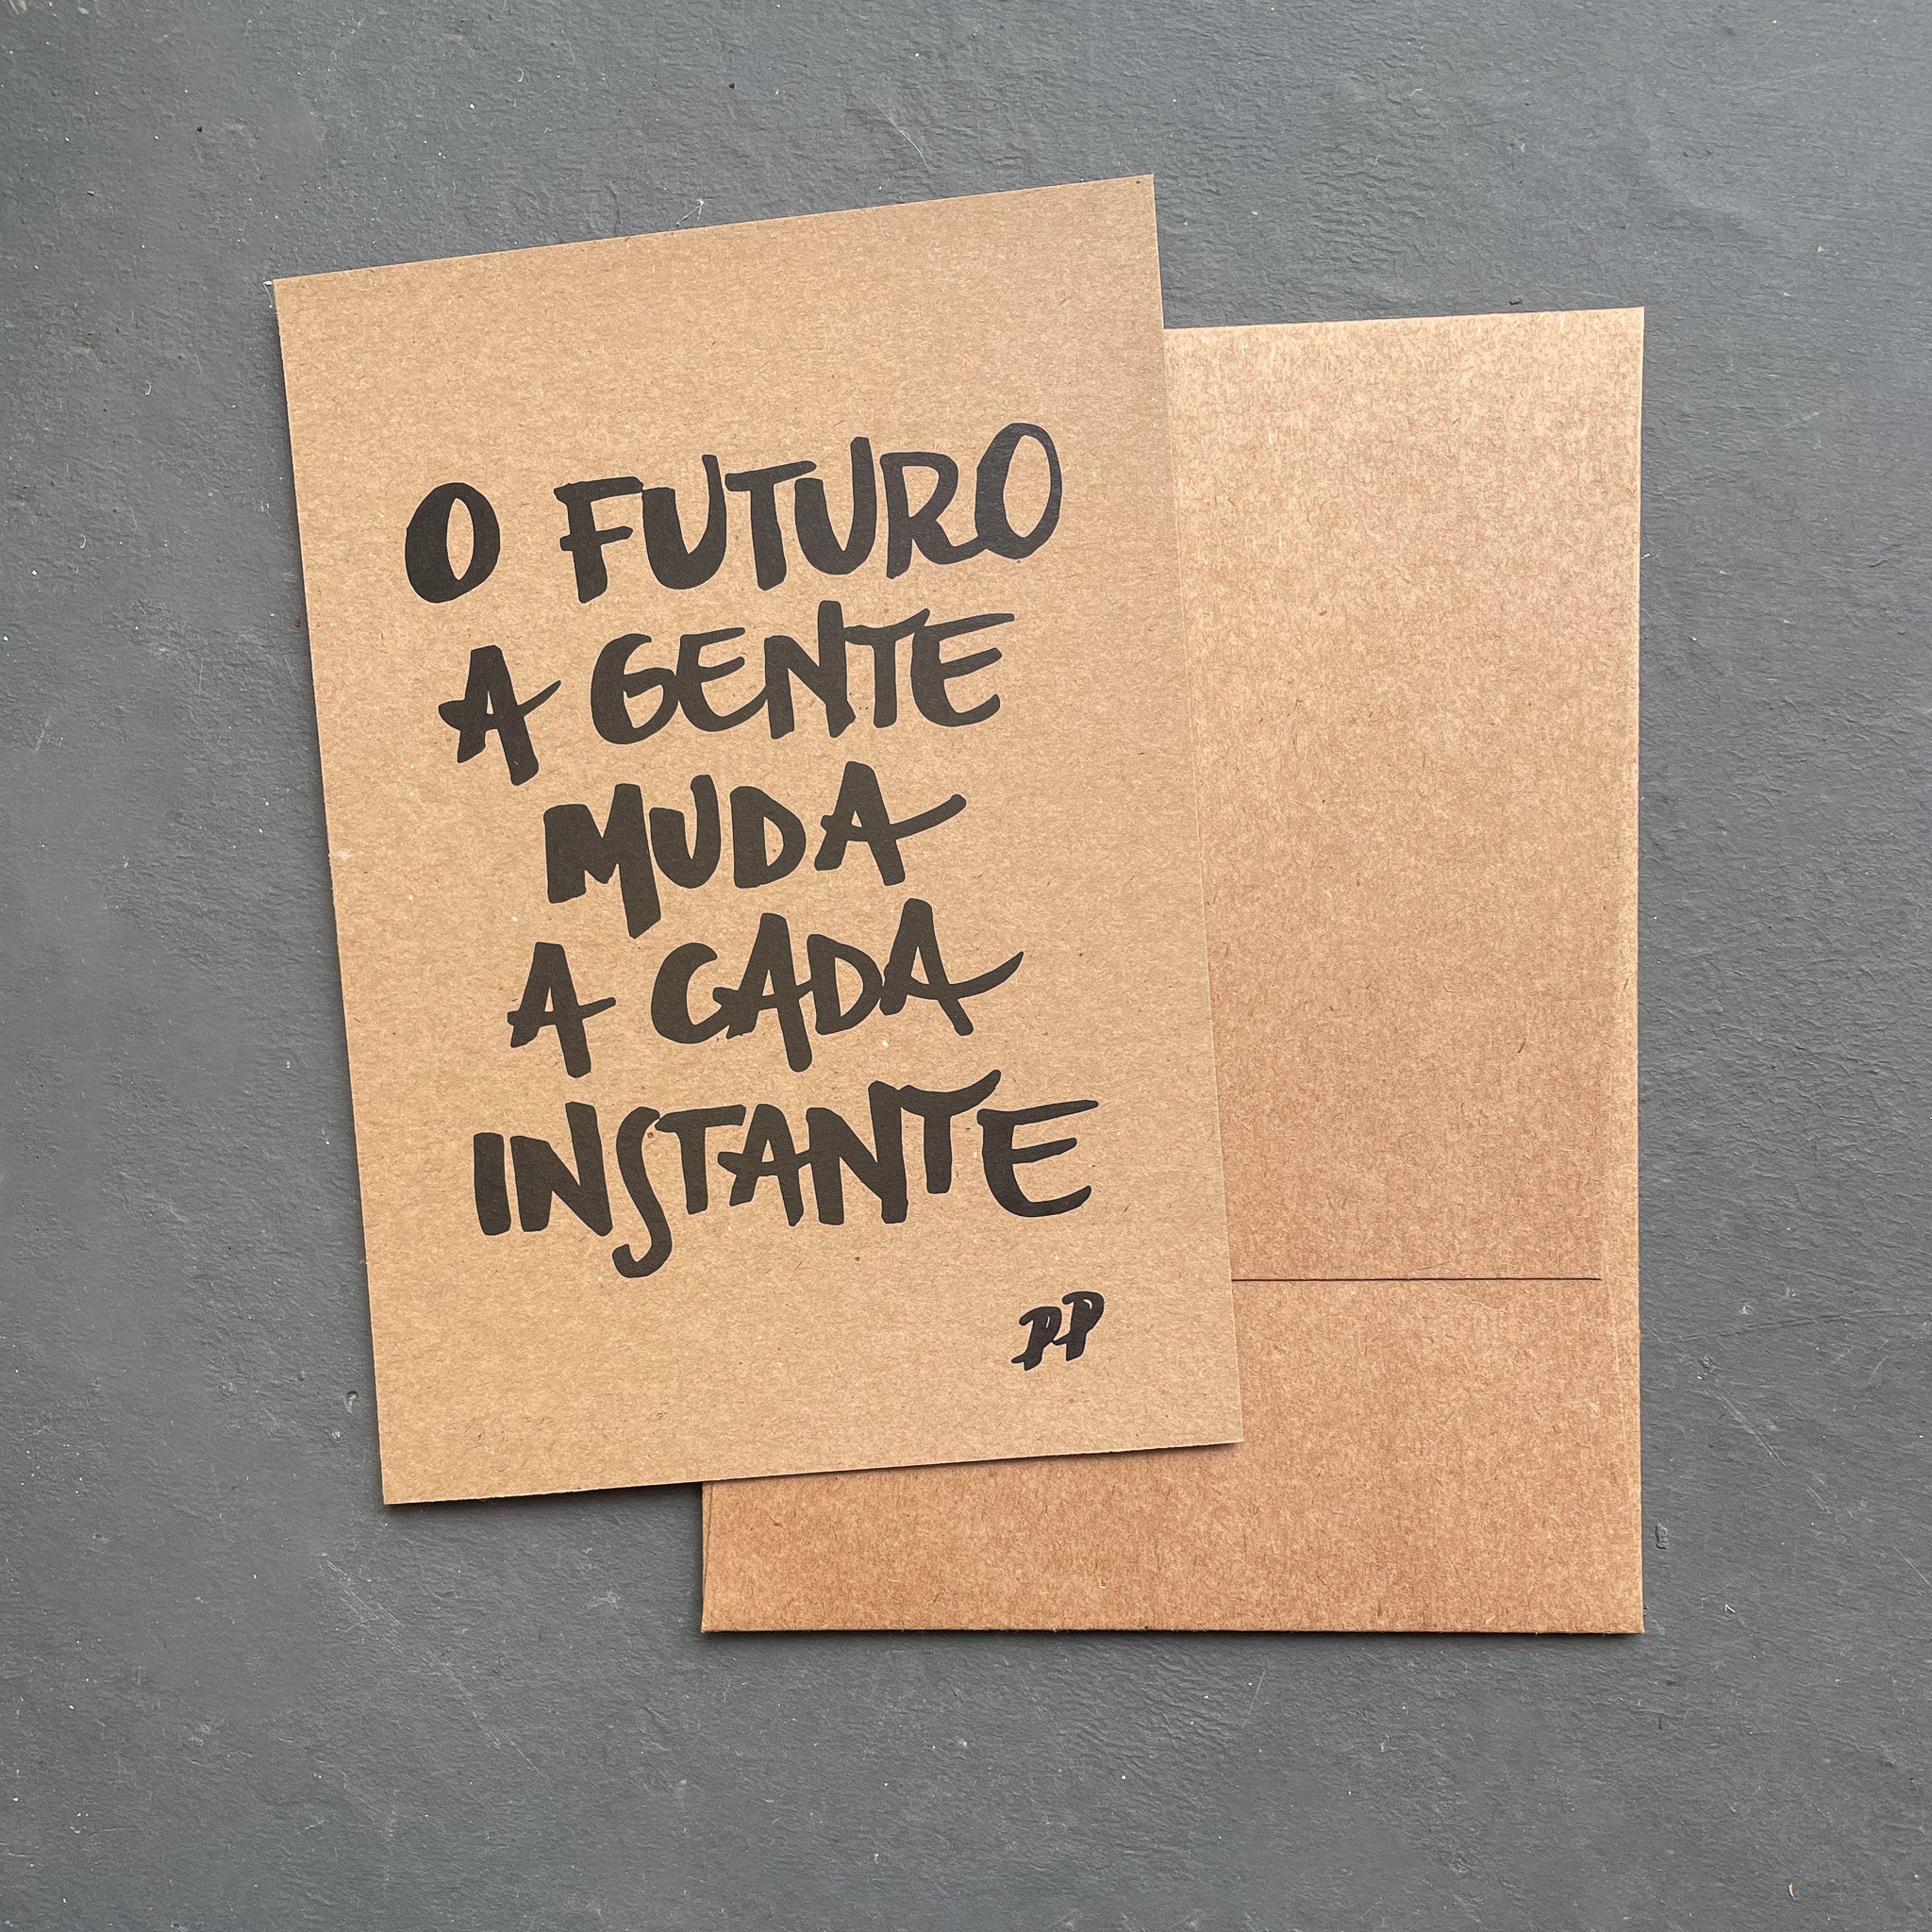 Cartão Presente: O futuro a gente muda a cada instante